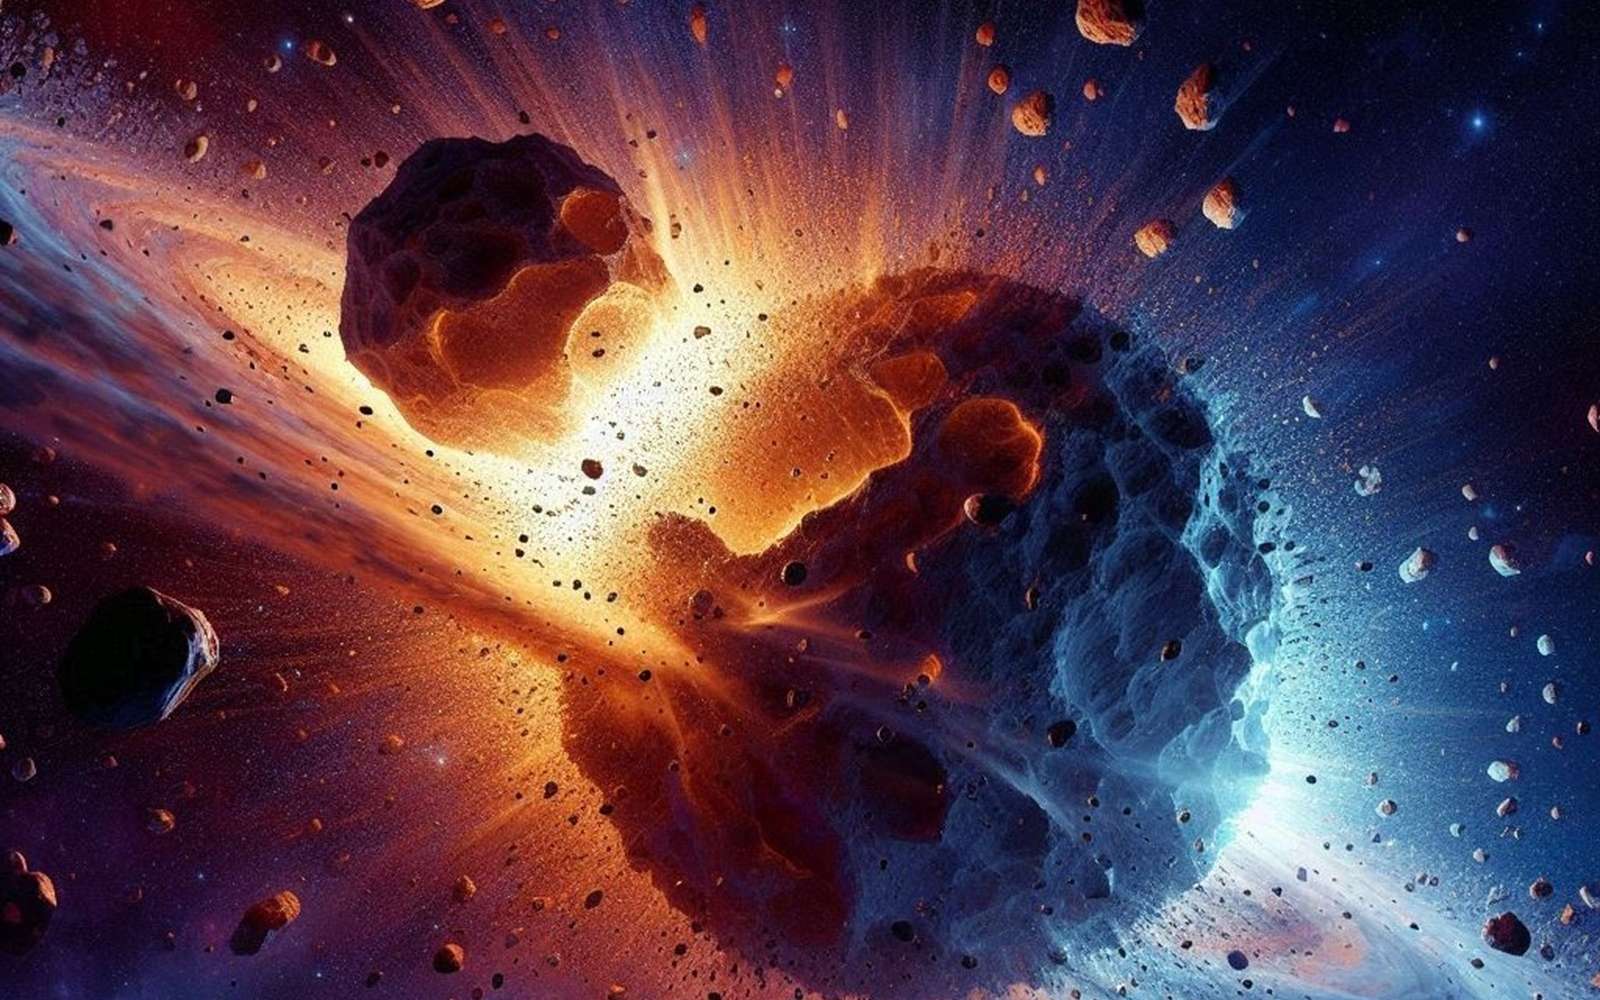 Le télescope James-Webb révèle une collision géante d'astéroïdes dans un système solaire proche